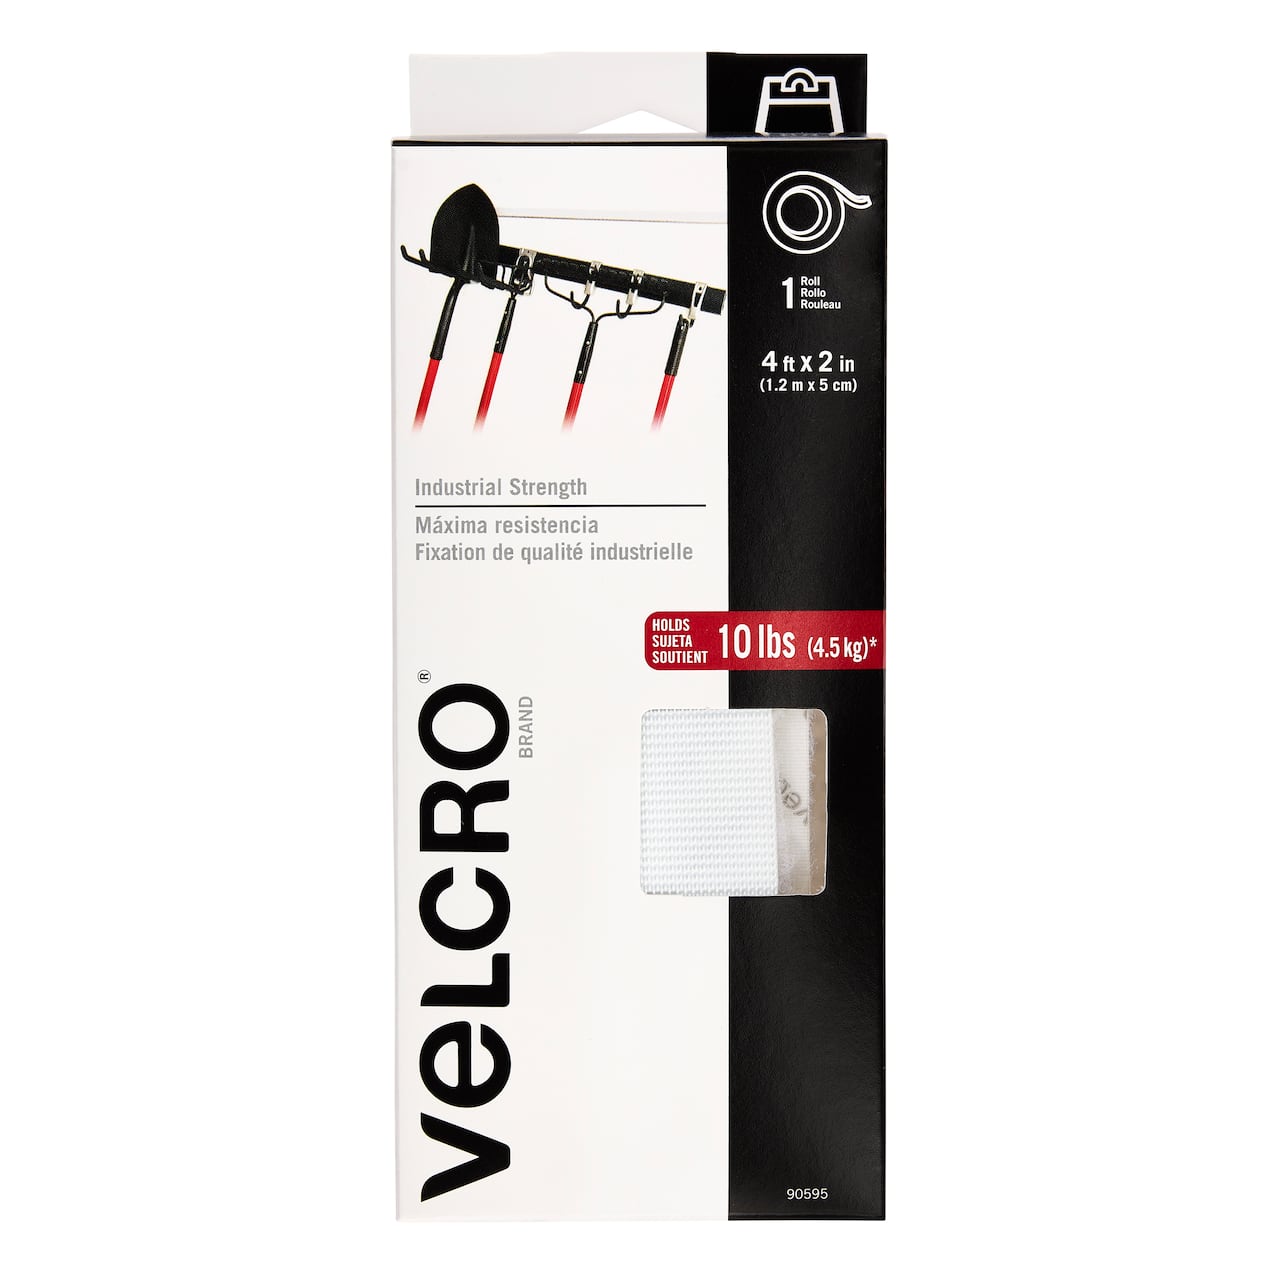 VELCRO&#xAE; Brand Industrial Strength Tape, 4ft.